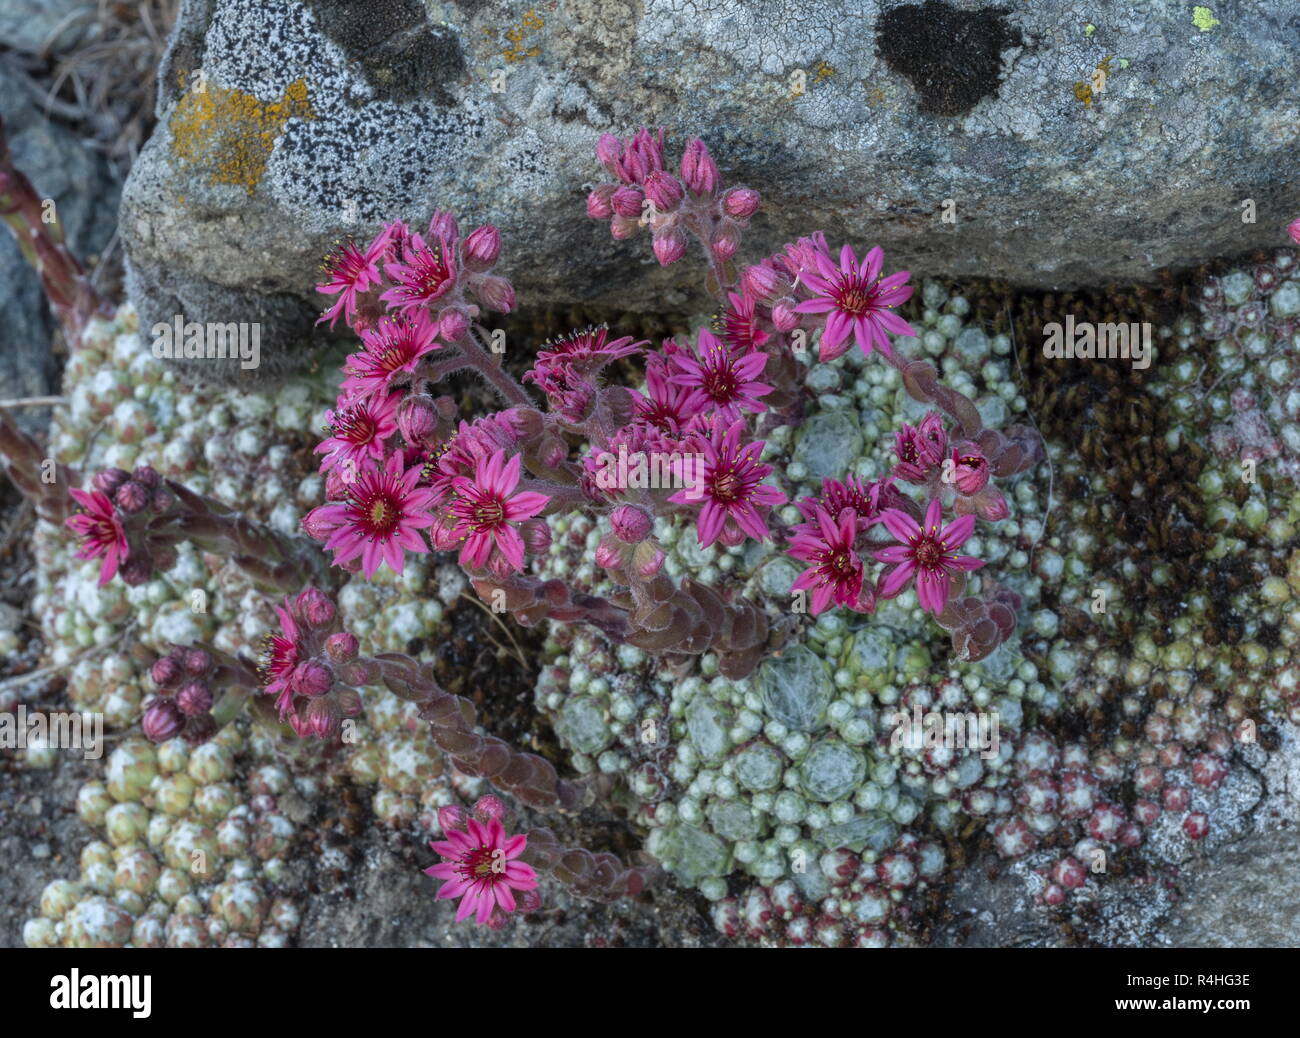 Cobweb chambre-poireau, Sempervivum arachnoideum, en fleurs dans les Alpes italiennes. Banque D'Images